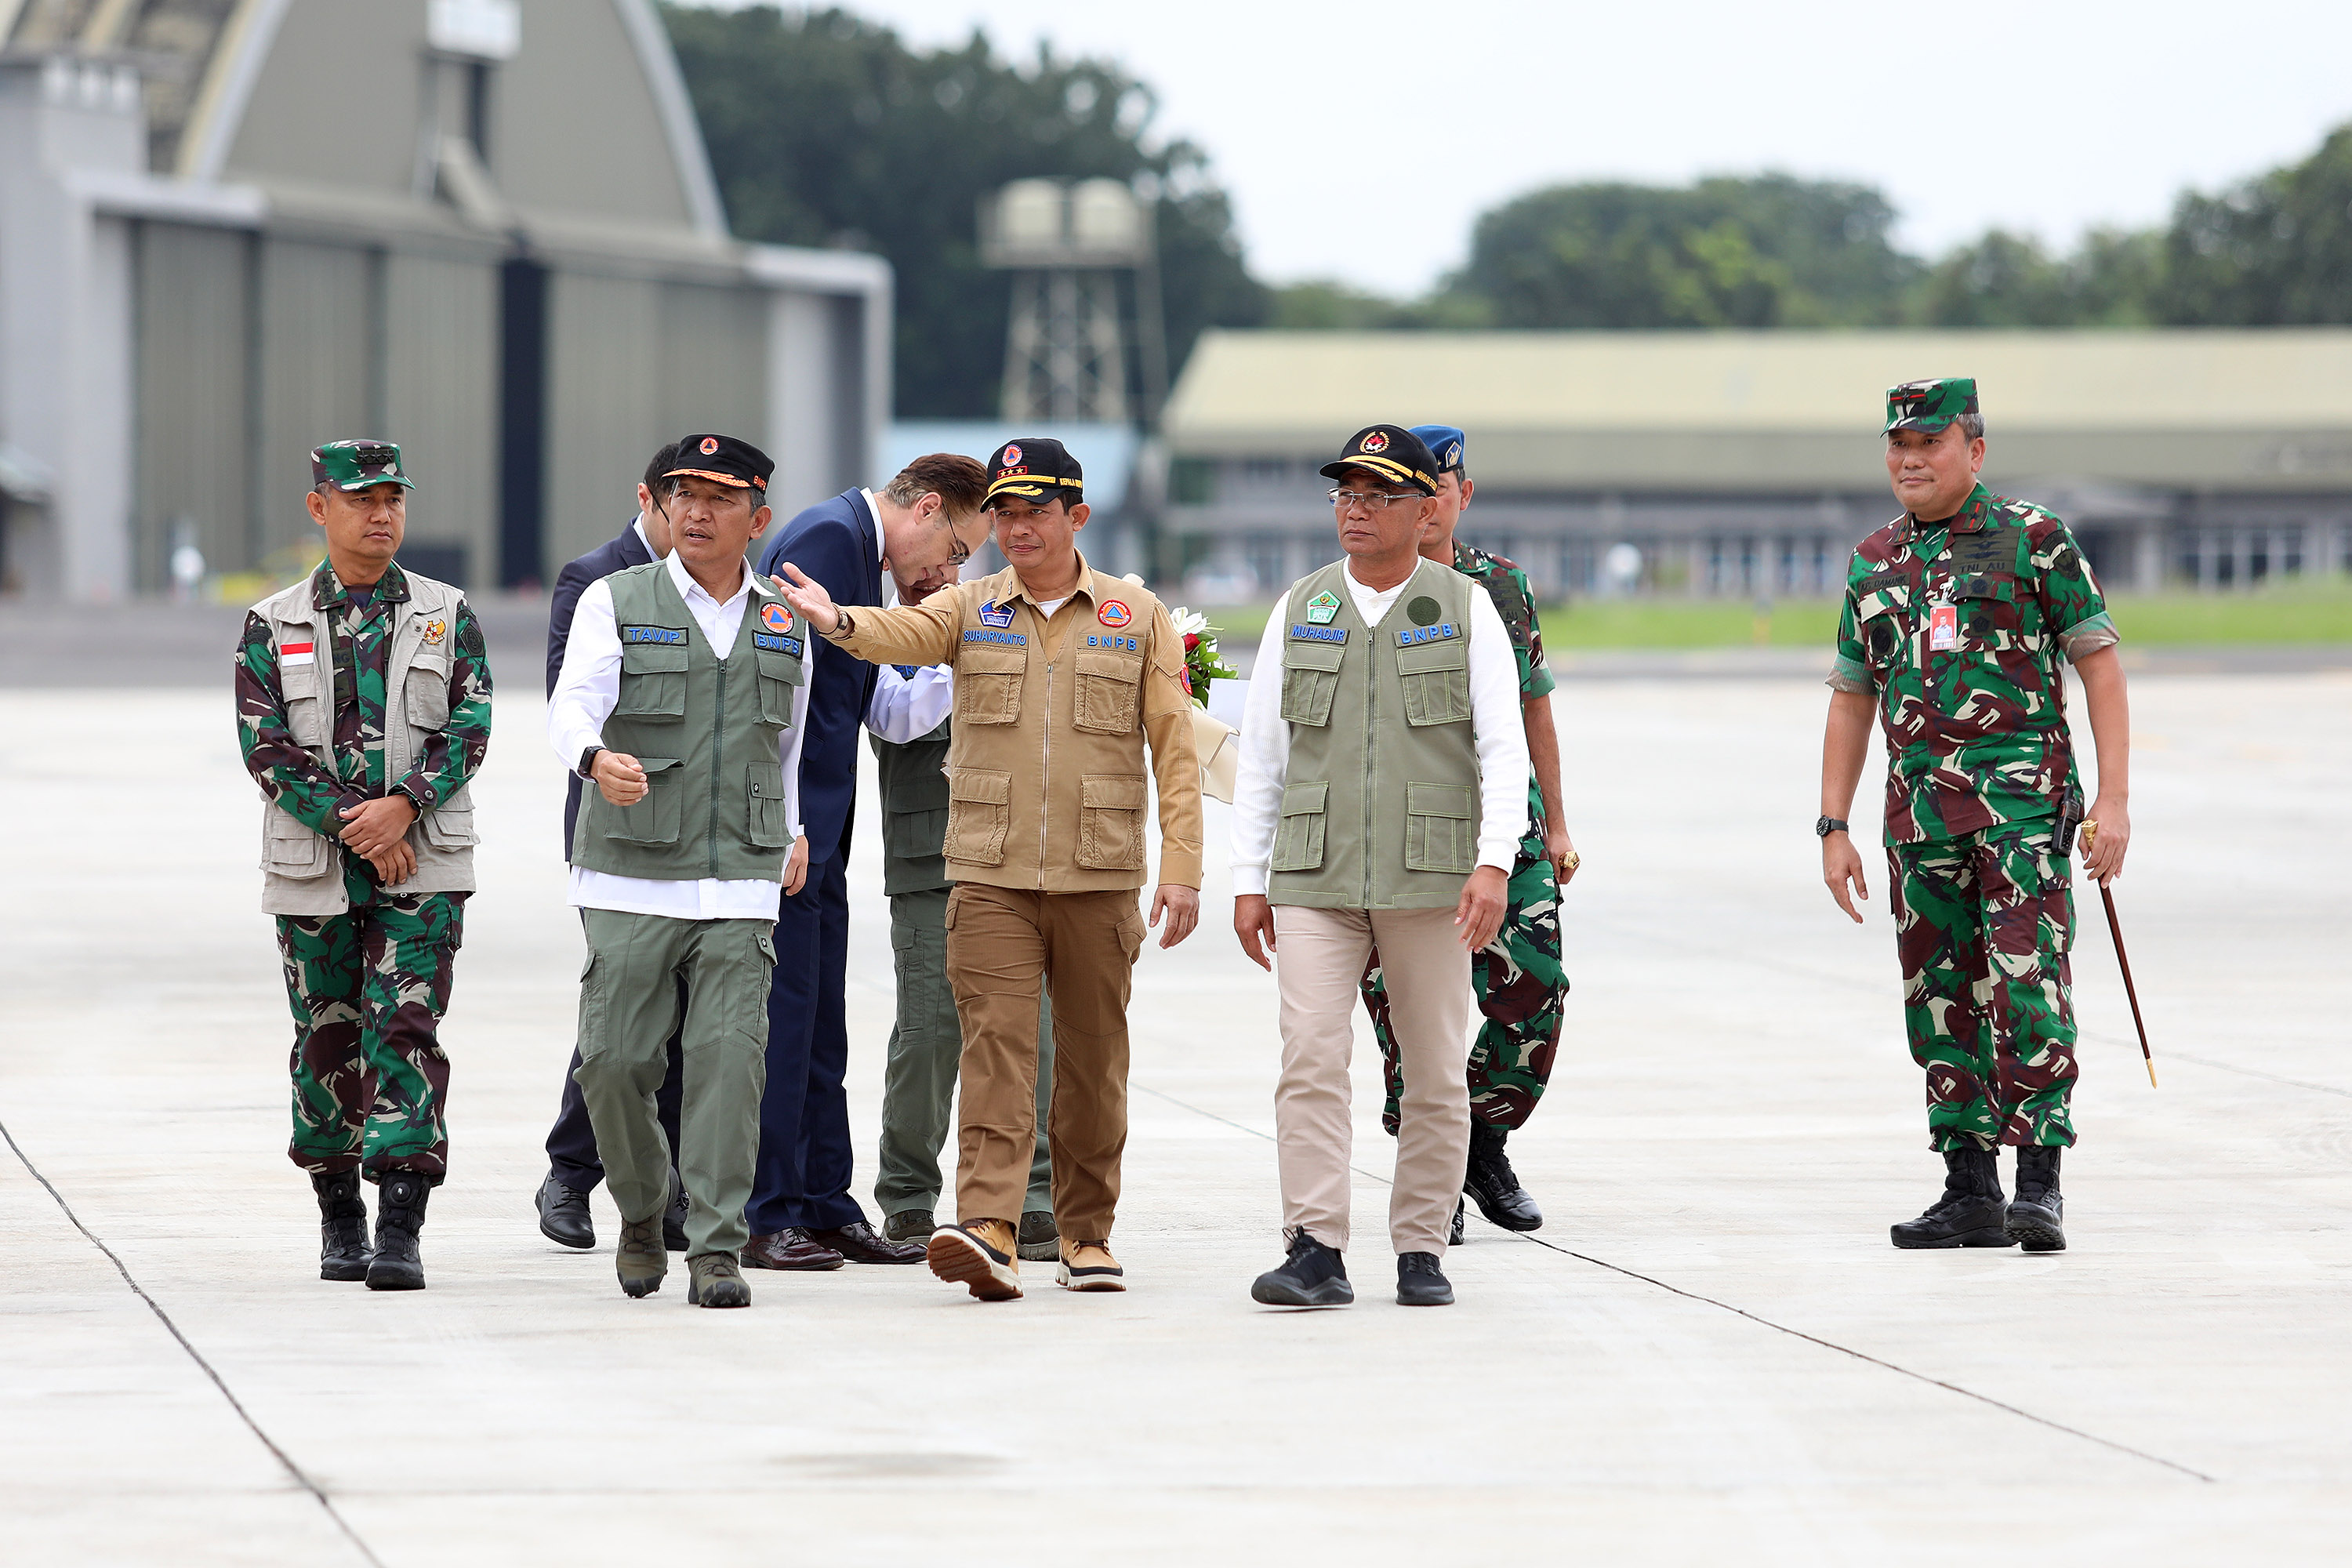 Kepala BNPB Letjen TNI Suharyanto S.Sos., M.M., (rompi cokelat) bersama Menko PMK Muhadjir Effendy (rompi hijau) beserta rombongan sesaat setelah turun dari pesawat usai melaksanakan misi kemanusiaan untuk Turkiye di Jakarta, Jumat (24/2).